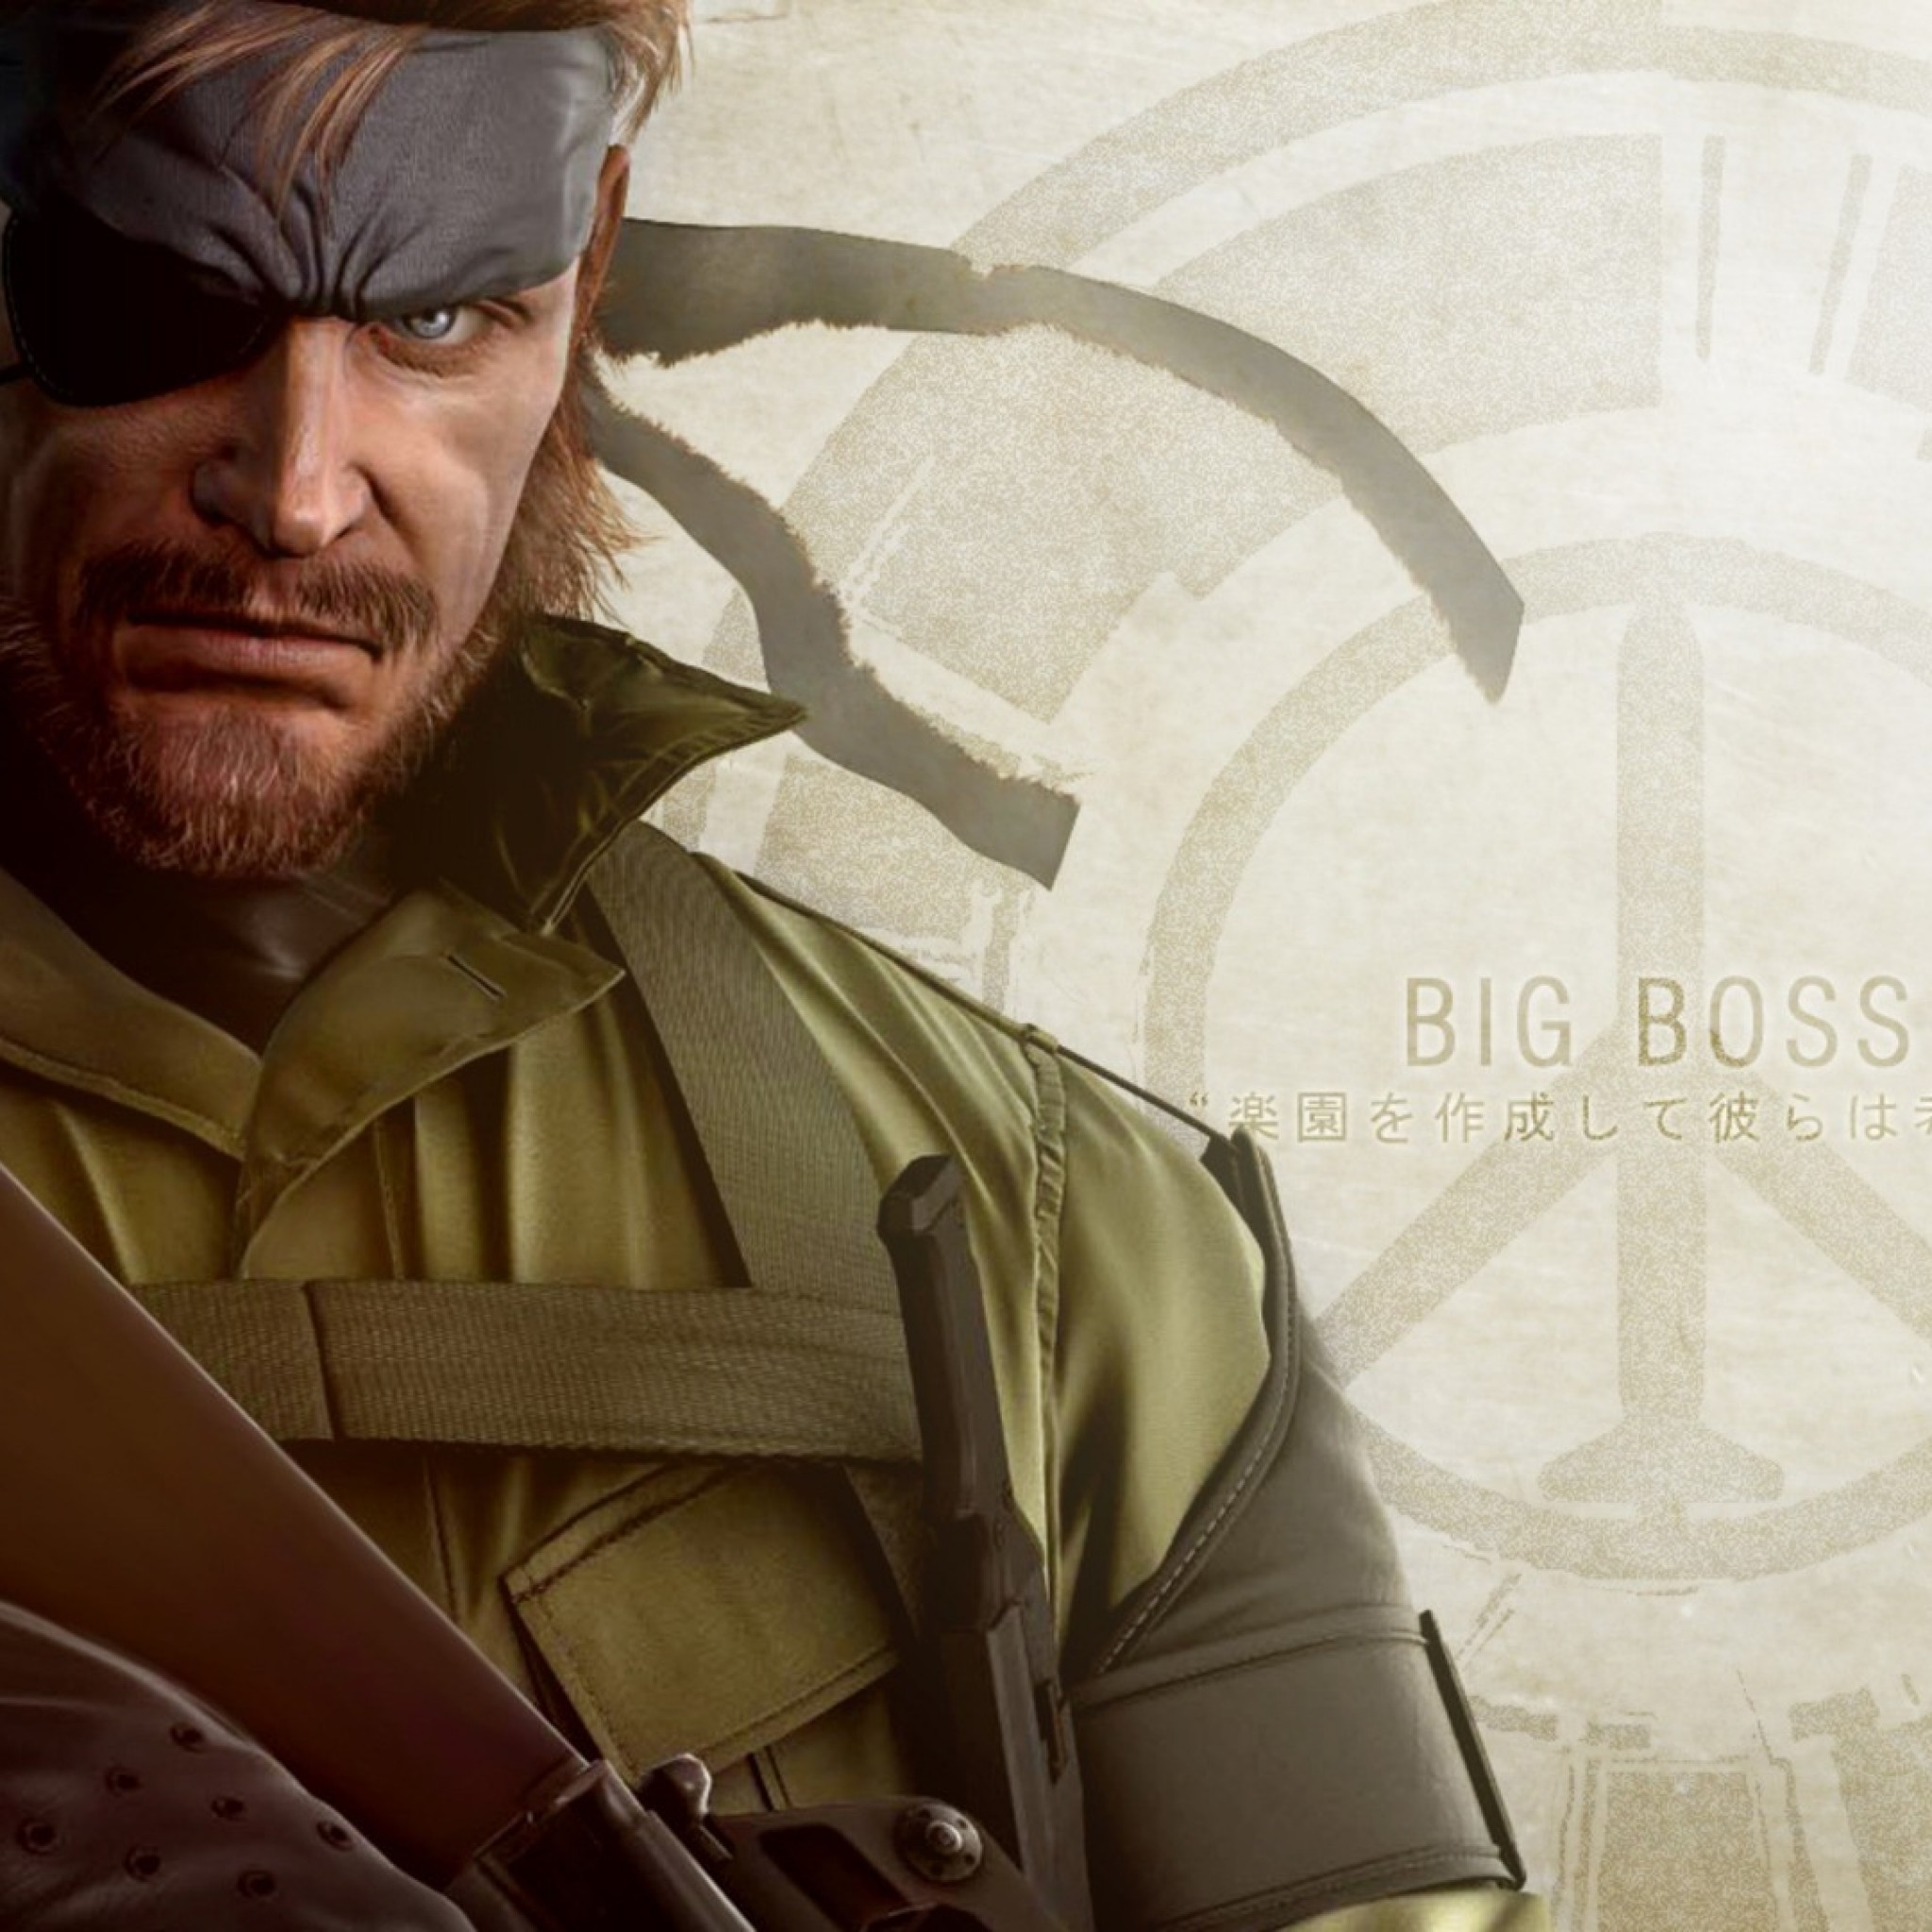 Сколько лет расулу биг босс. Big Boss Metal Gear. Metal Gear Solid big Boss. Биг босс Metal Gear на аватарку. Повязка Биг босса.